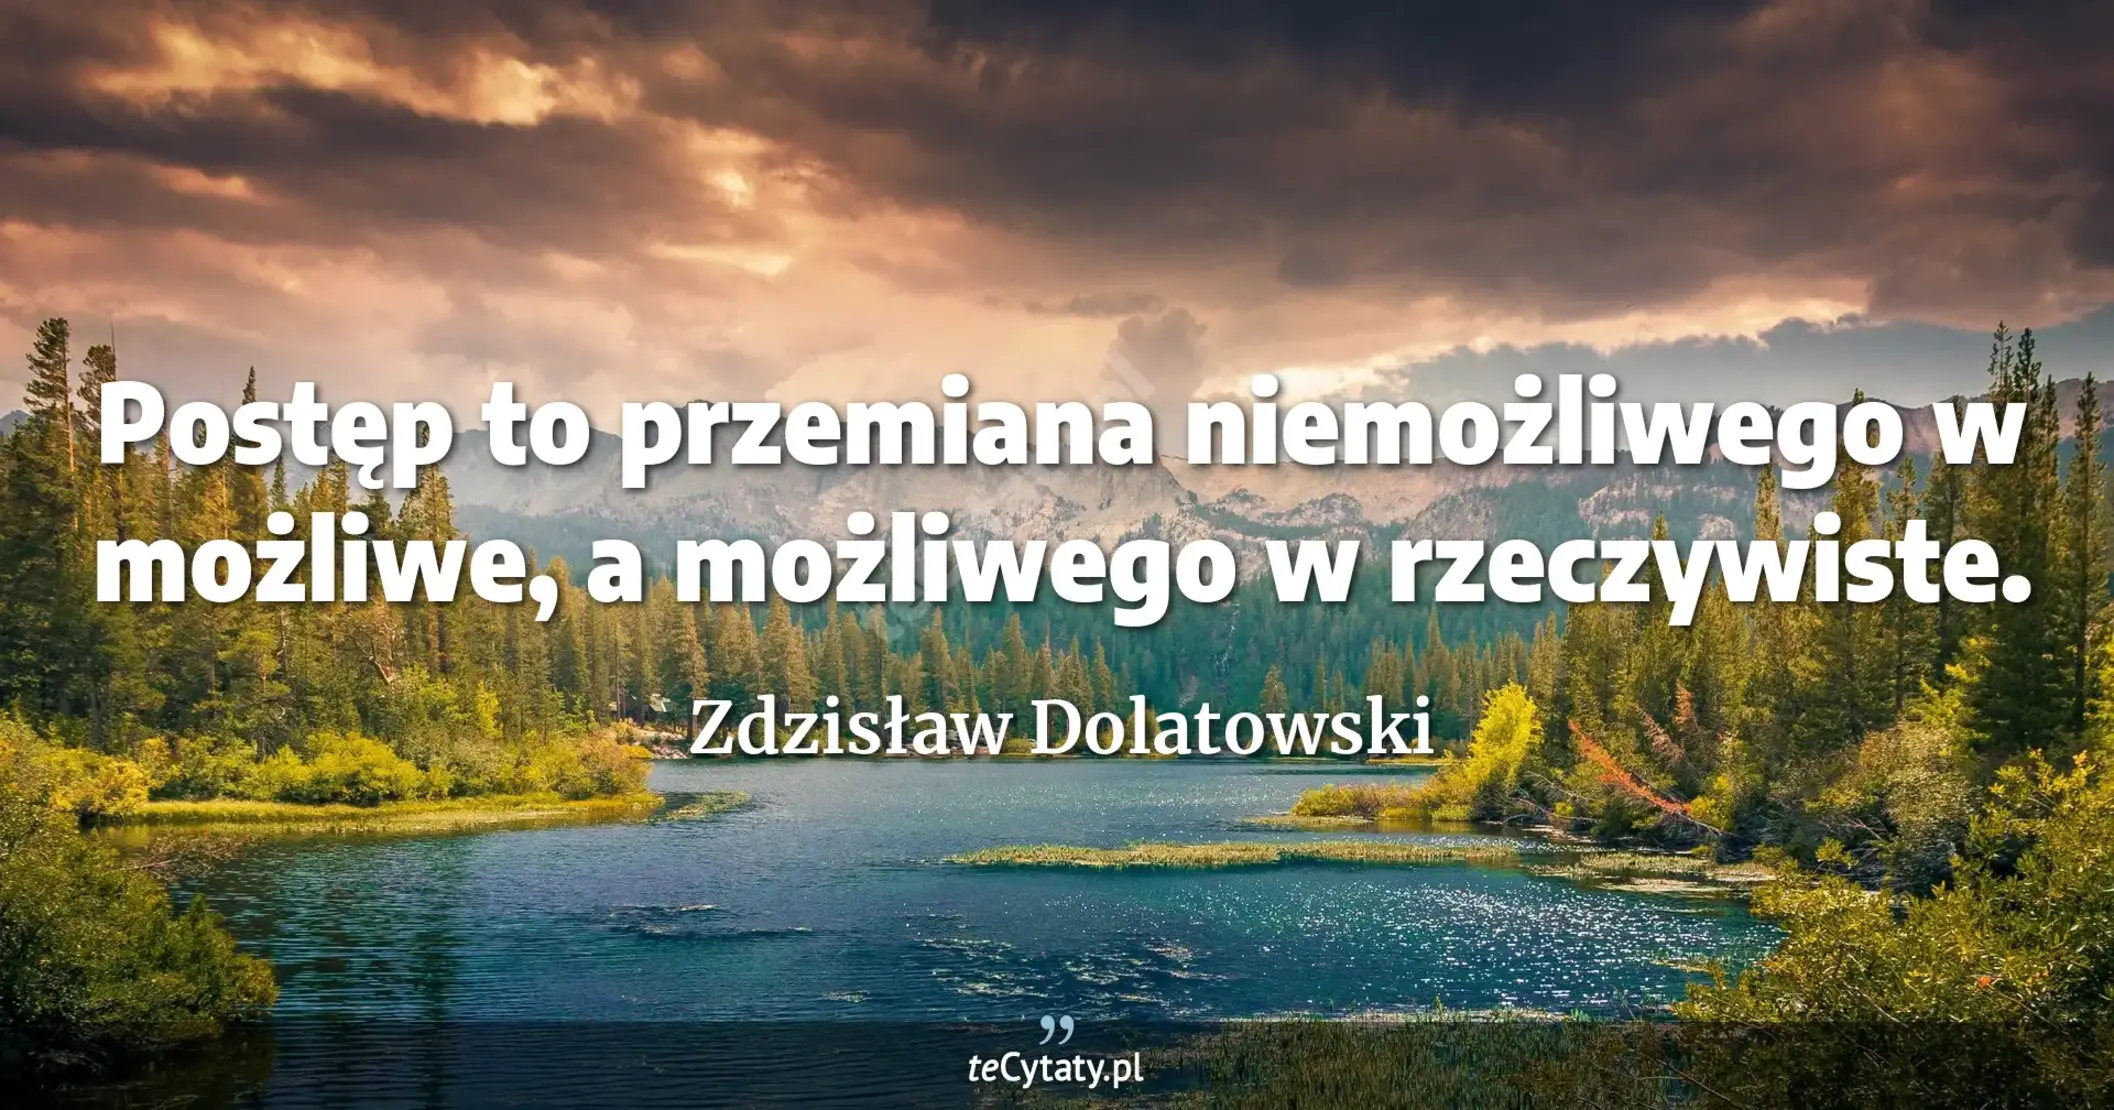 Postęp to przemiana niemożliwego w możliwe, a możliwego w rzeczywiste. - Zdzisław Dolatowski